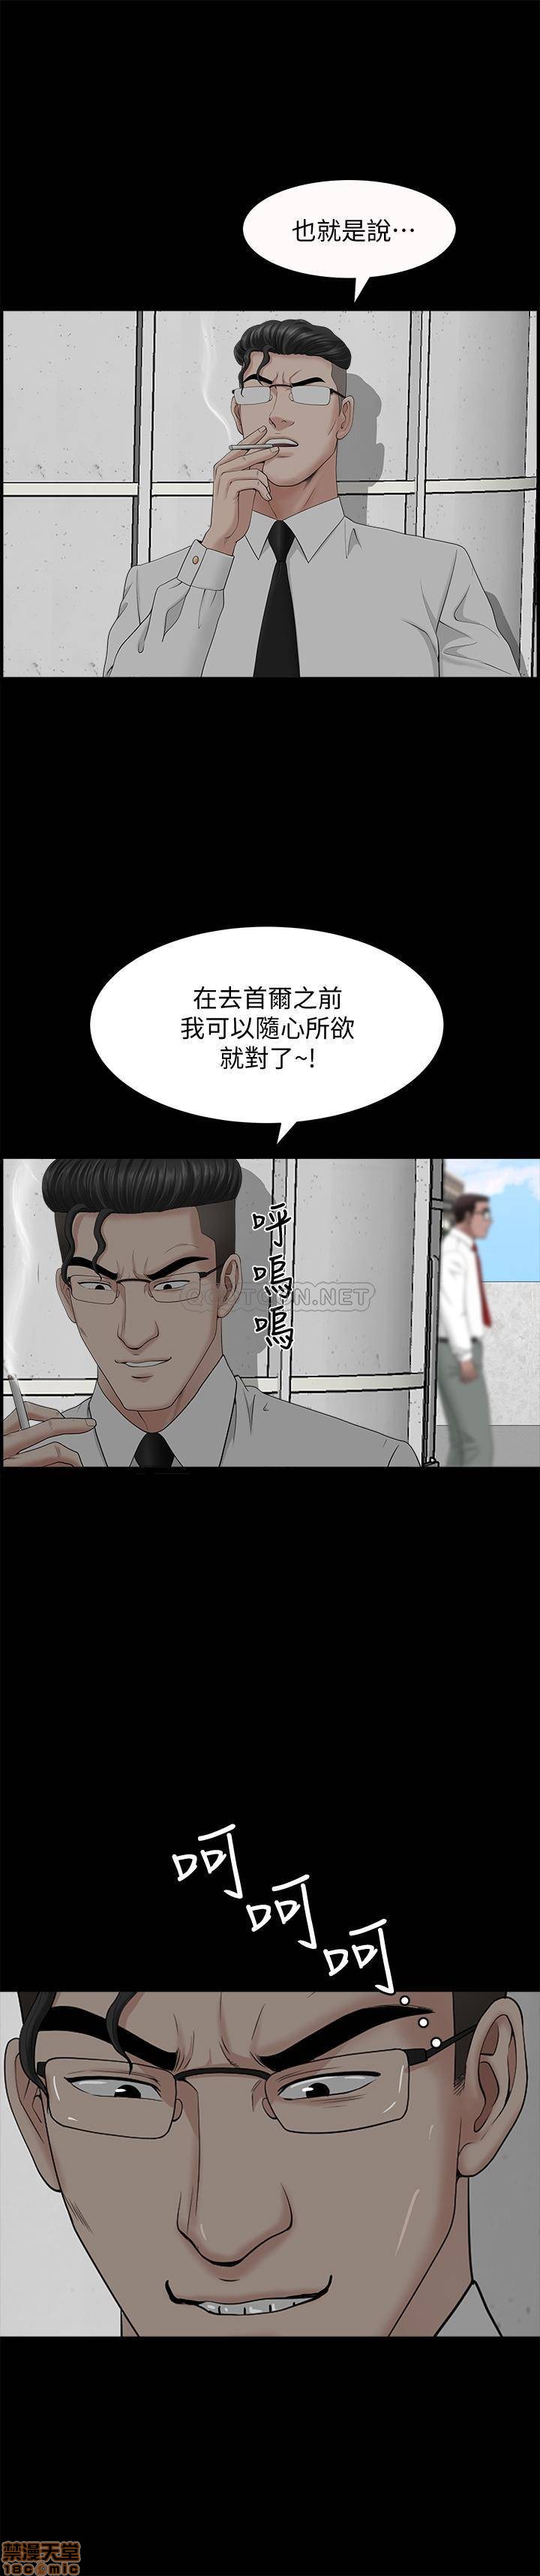 《双妻生活》漫画 第24话 - 精湛的舌功